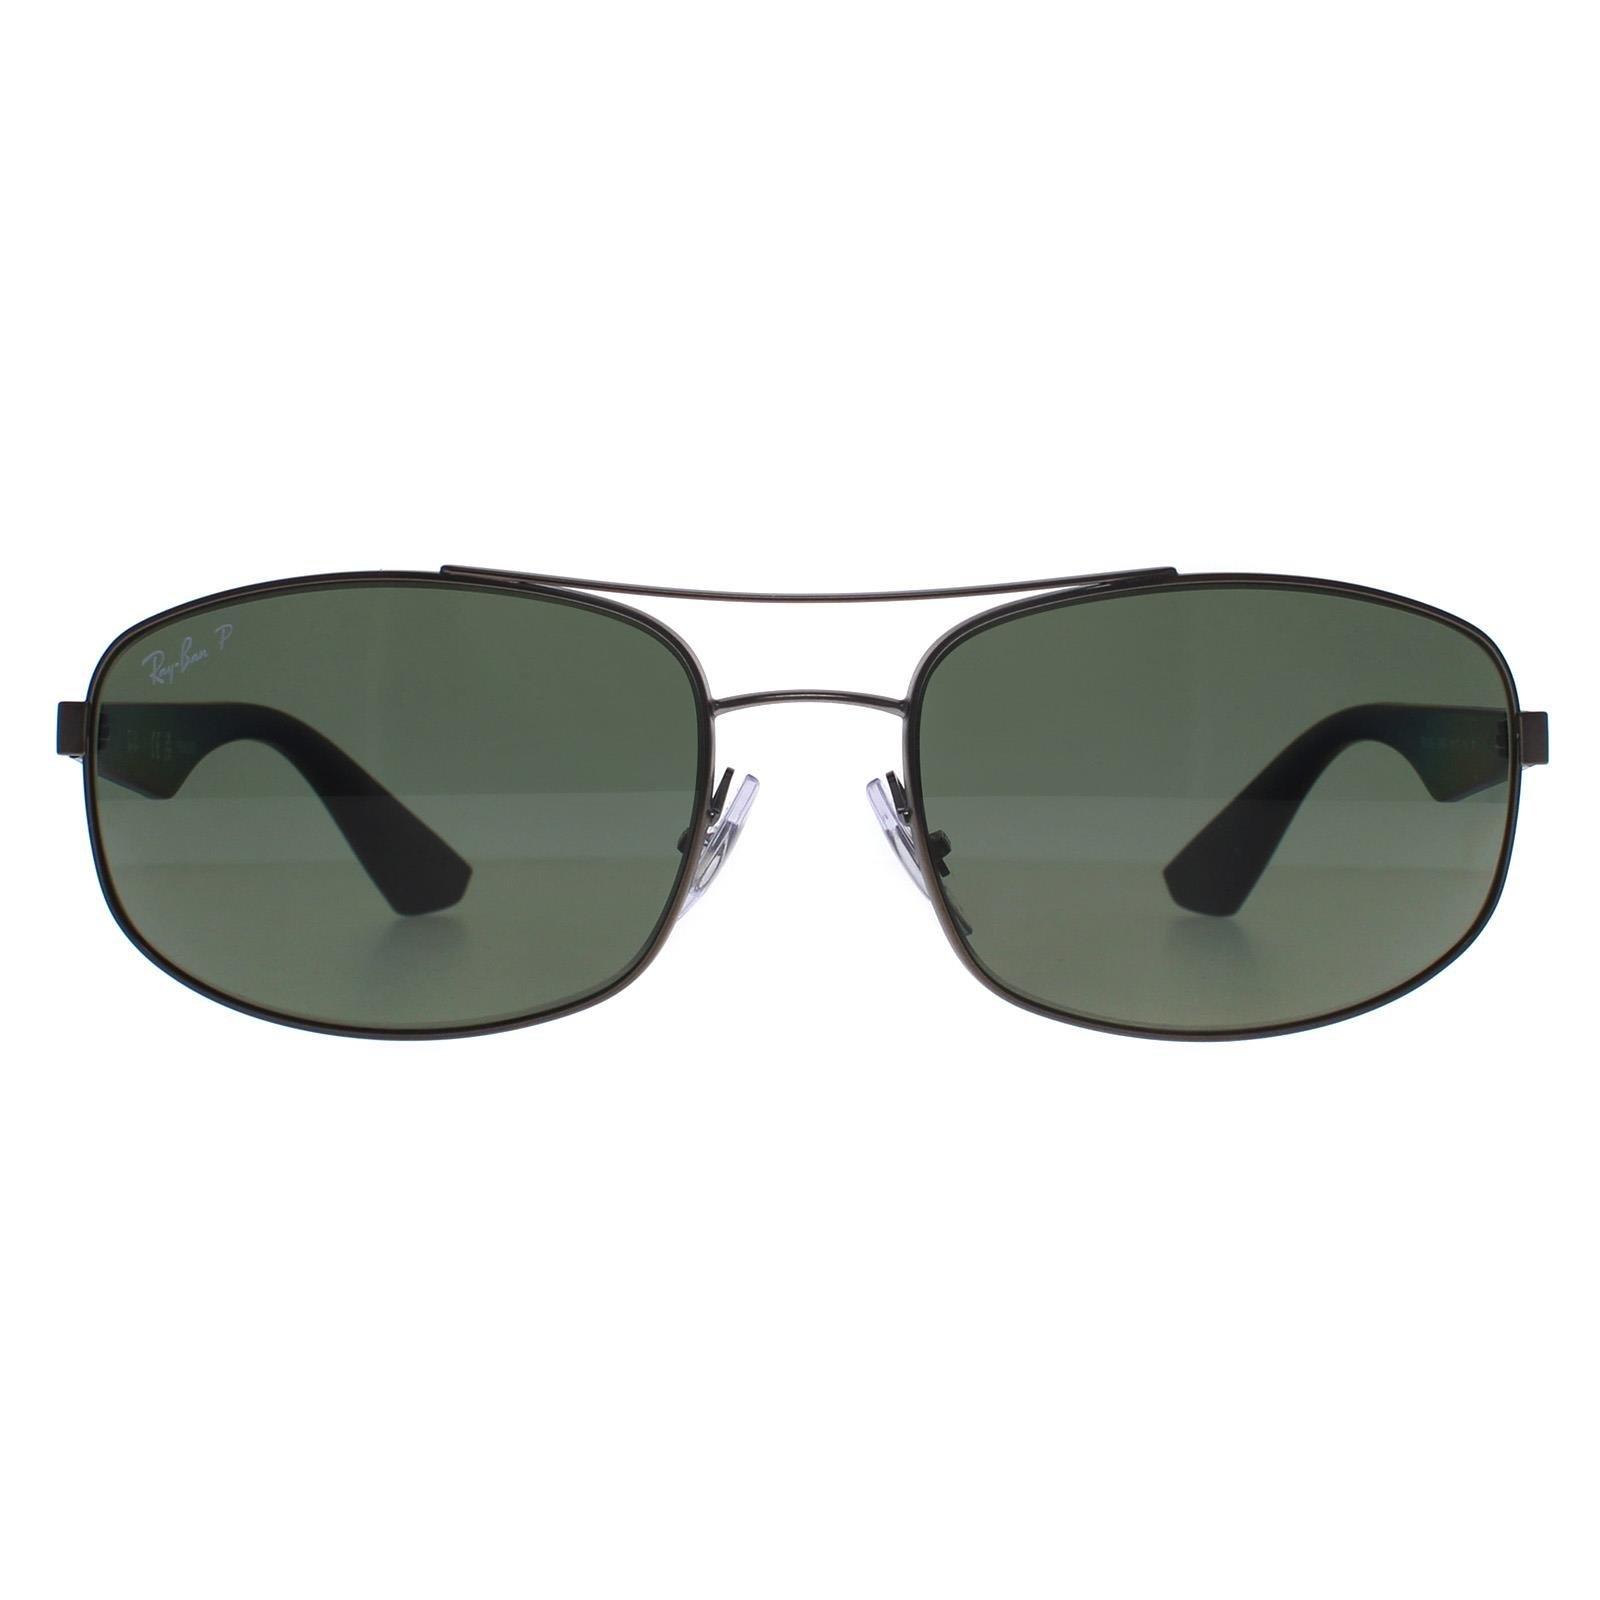 Прямоугольные матовые темно-зеленые поляризованные солнцезащитные очки 3527 цвета бронзы Ray-Ban, серый